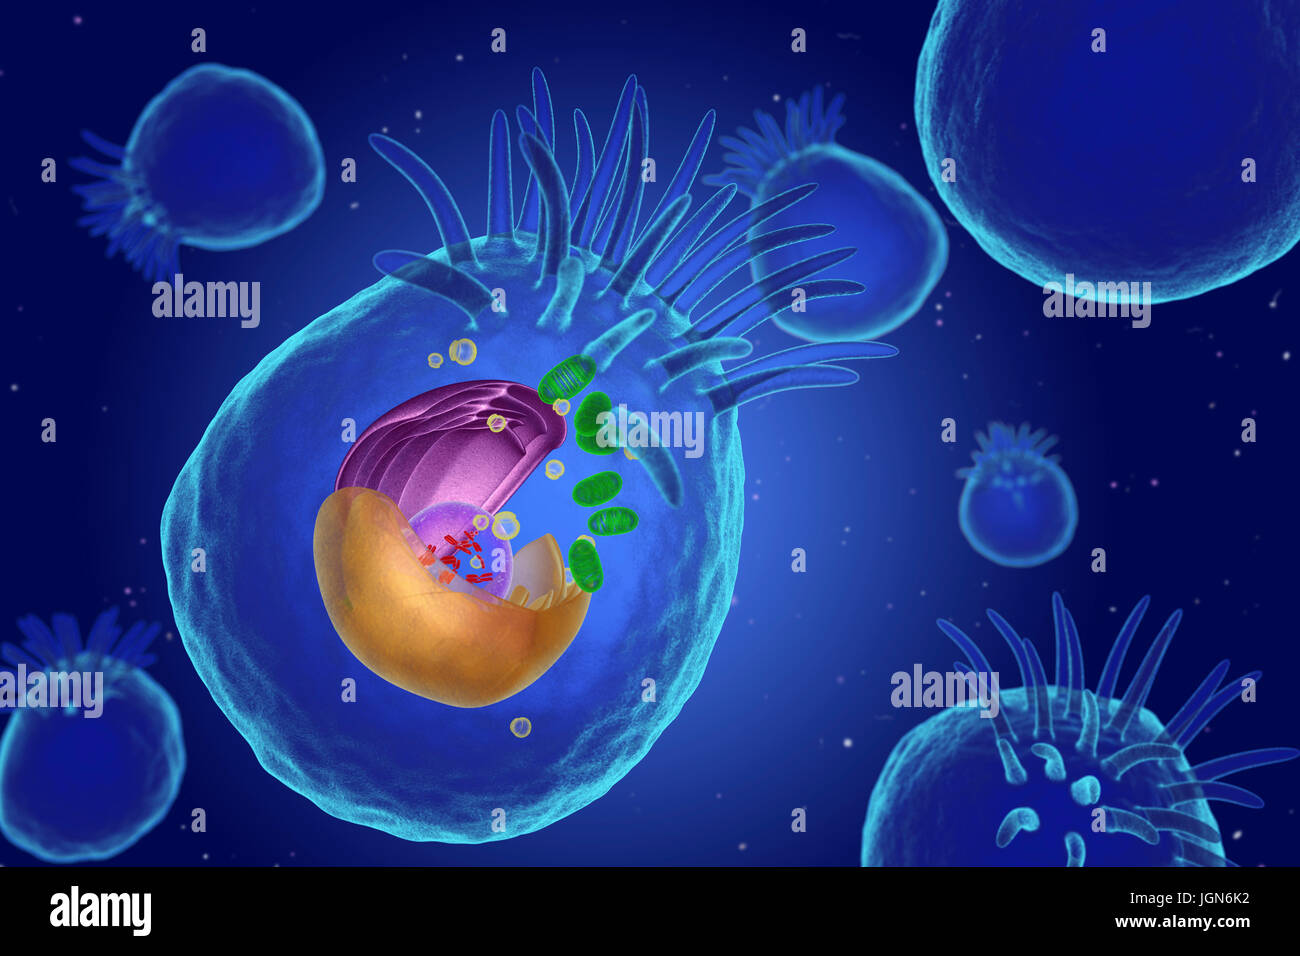 Illustrazione di organelli in una cellula animale. Al centro è il nucleo (trasparente), che contiene i cromosomi (rosso) che trattengono la cellula di informazioni genetiche. Il reticolo endoplasmatico (ER, rosa) è il sito di sintesi lipidica e la produzione di le proteine legate alla membrana. Il corpo del Golgi (giallo) modifica pacchetti e proteine. Mitocondri (verdi) fornire la cella con energia. Ciglia (dita) spostare particelle sull'esterno della cellula. Foto Stock